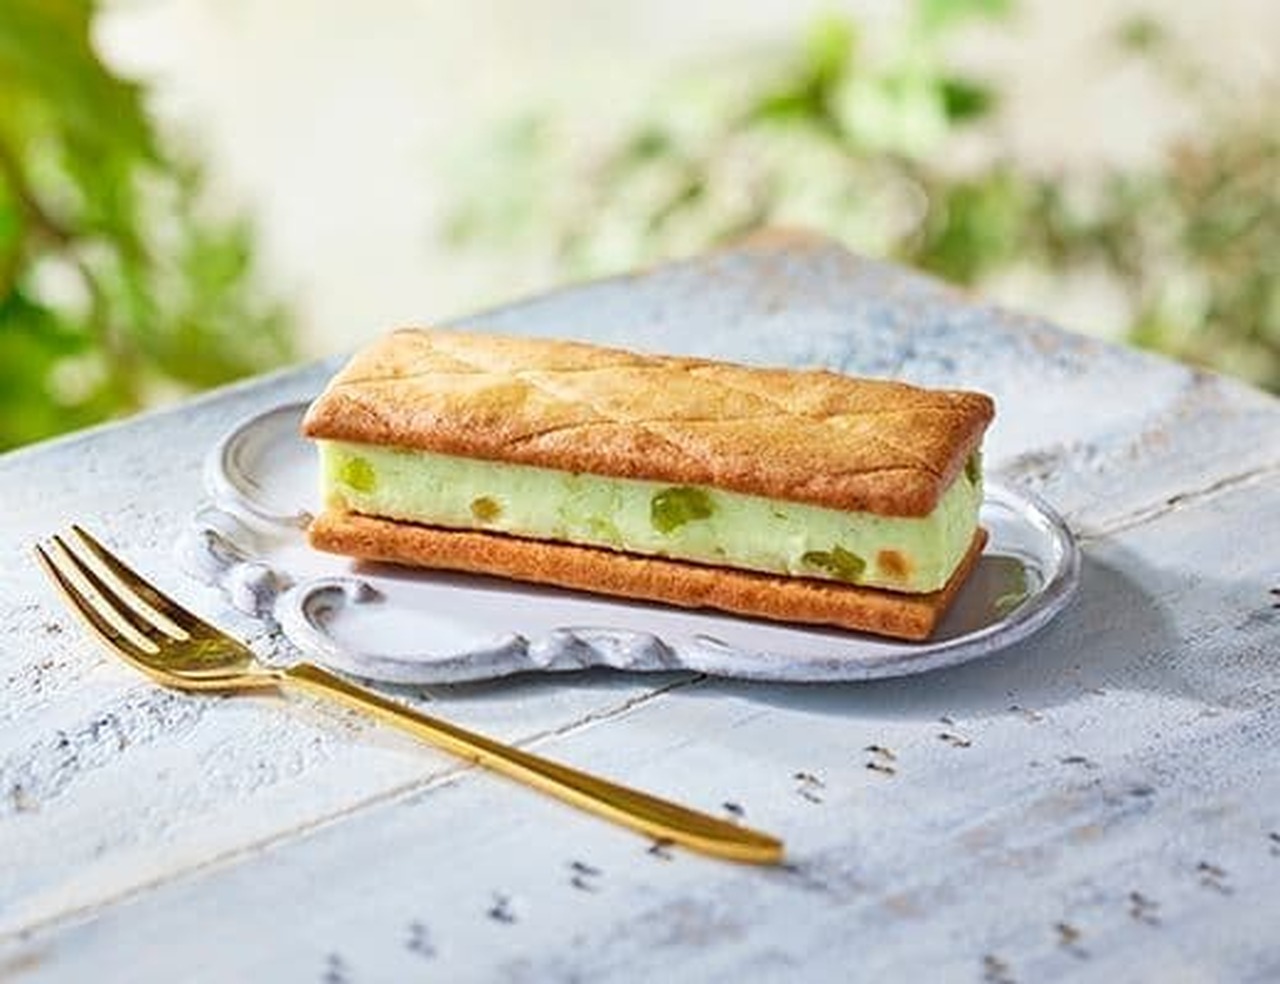 Lawson "Uchi Cafe Specialite Dew Melon Butter Biscuit Sandwich"